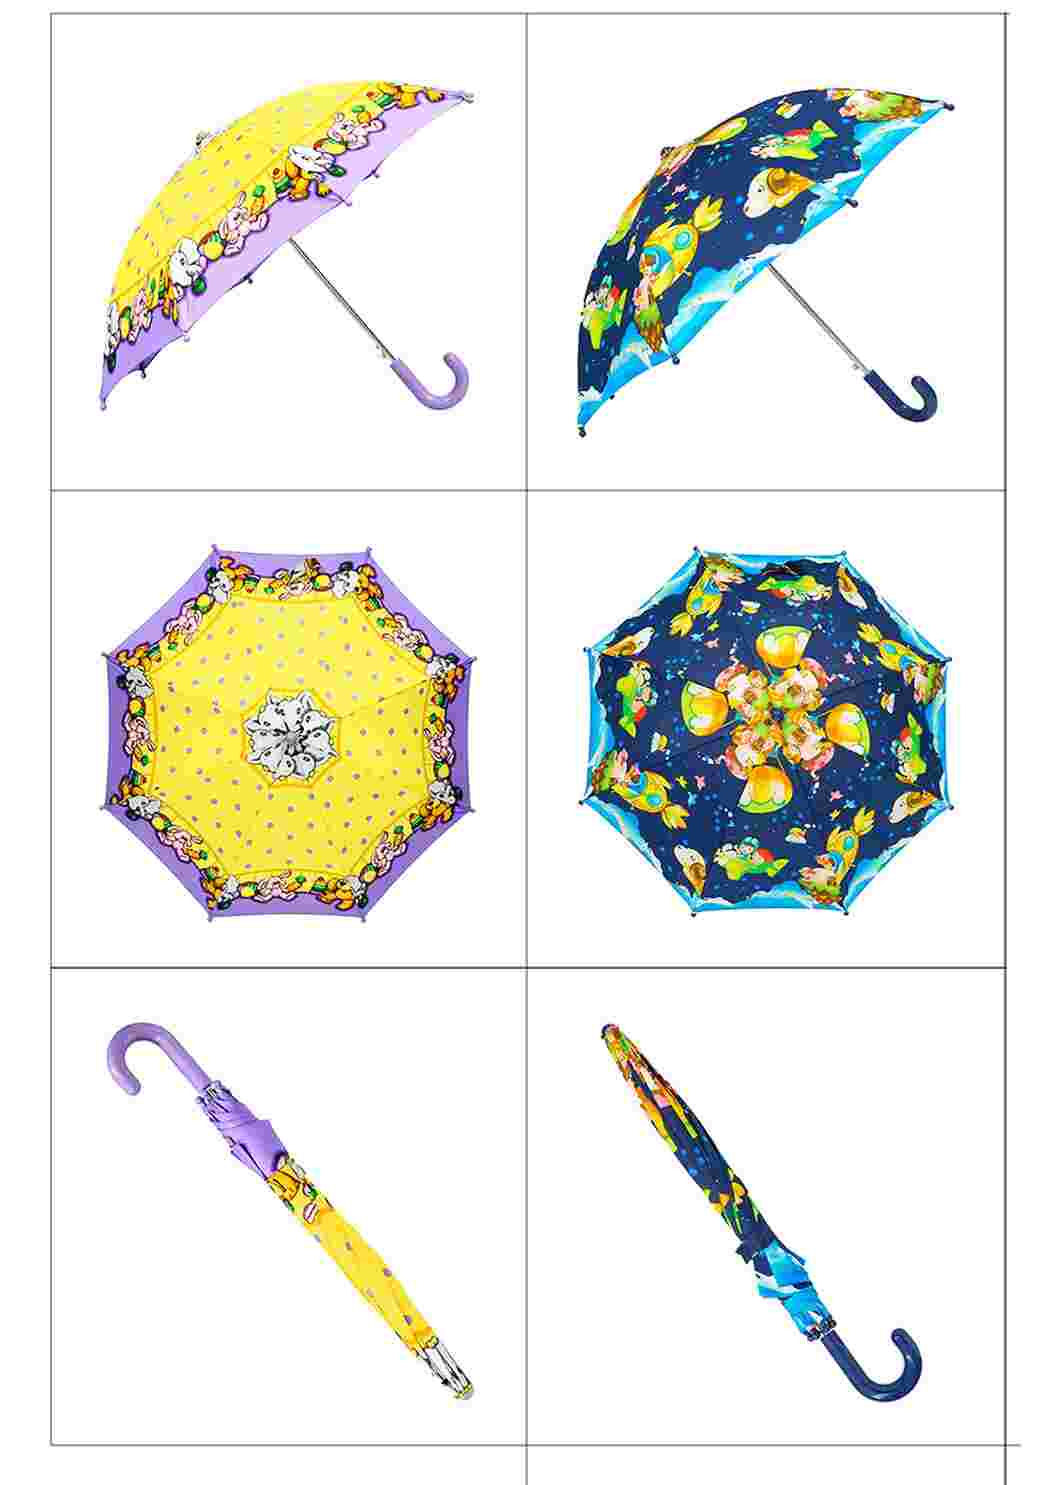 Зонтик собрать. Куполы зонтиков вид сверху и сбоку. Задание зонтик. Задание зонтики для детей. Игра зонтик.